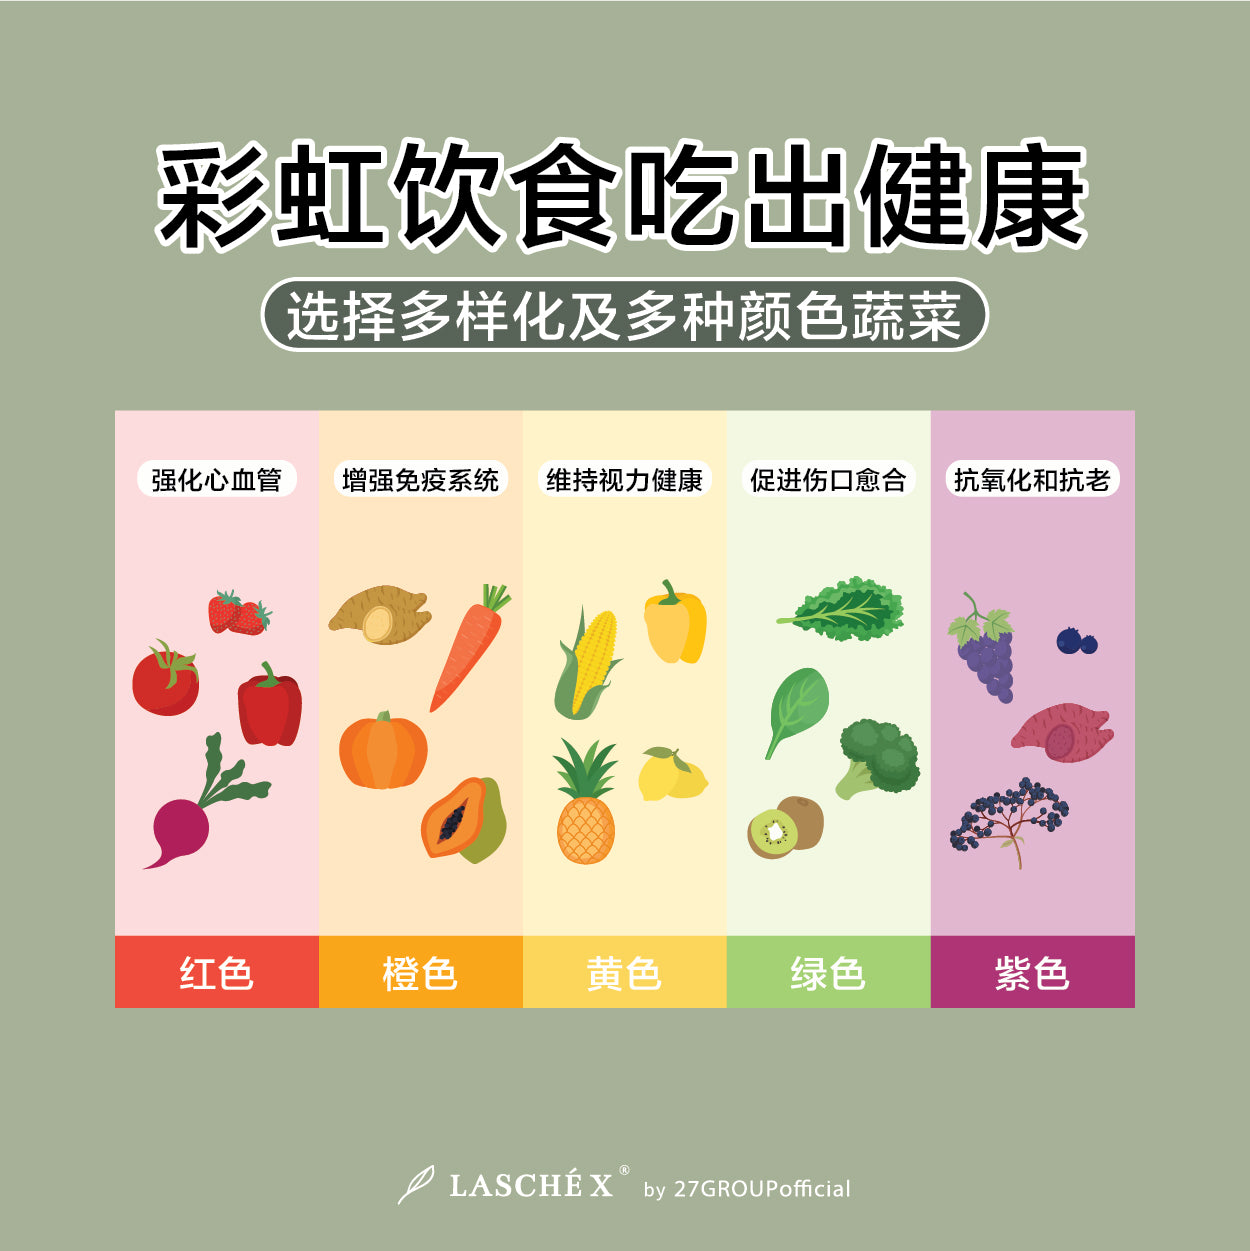 选择多样化及多种颜色蔬菜，彩虹饮食